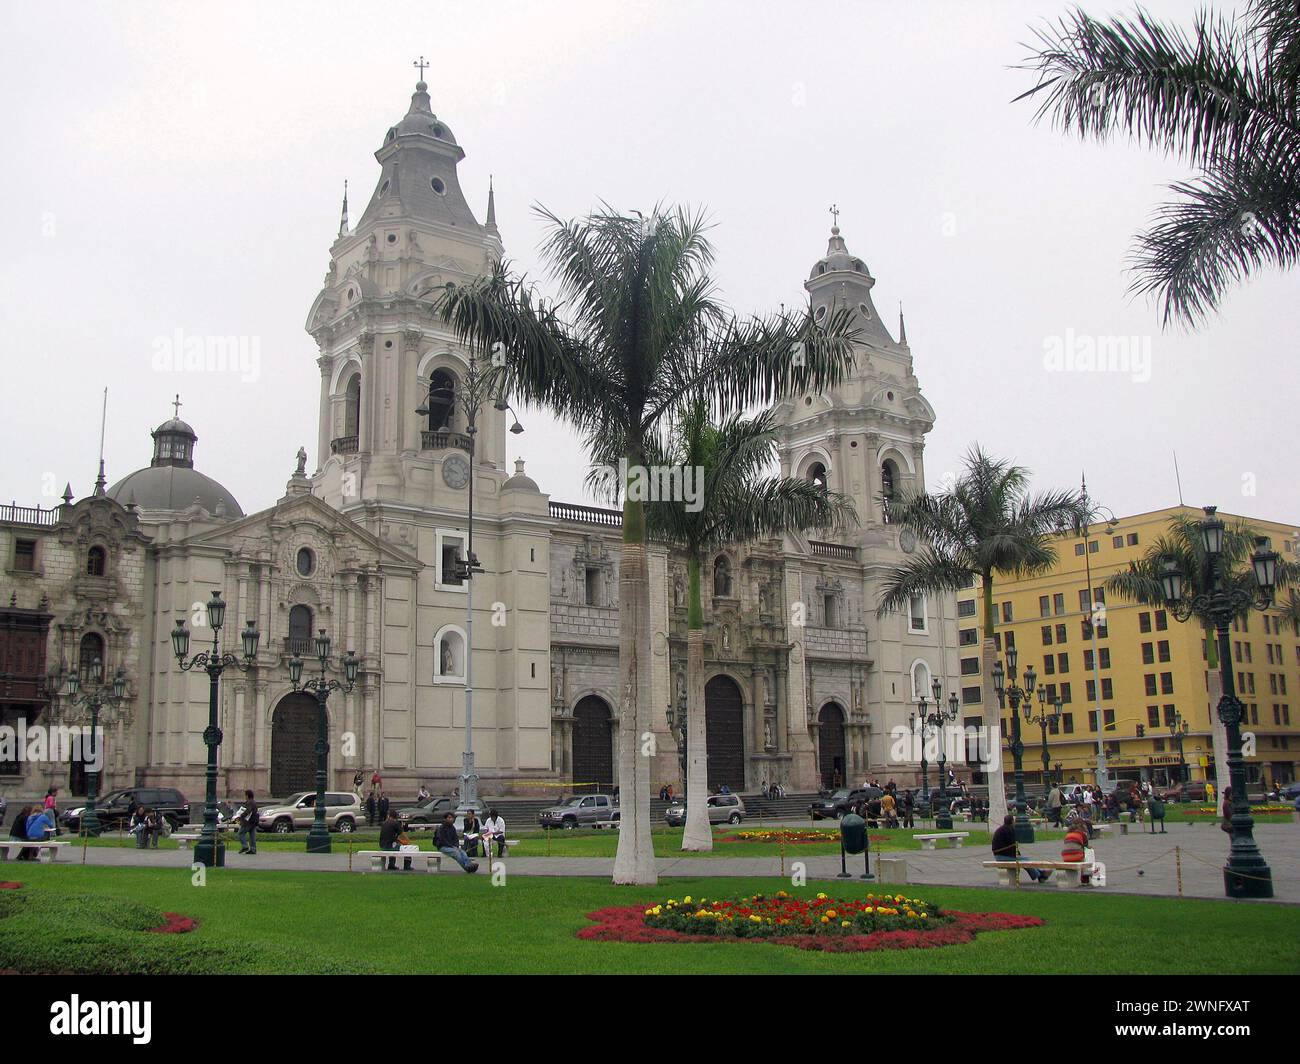 Lima, Perú - 09 jul 2008 - La Basílica Catedral de Lima en la Plaza Mayor o Plaza de Armas. Ubicado en el Centro Histórico de Lima, Perú. La gente y. Foto de stock